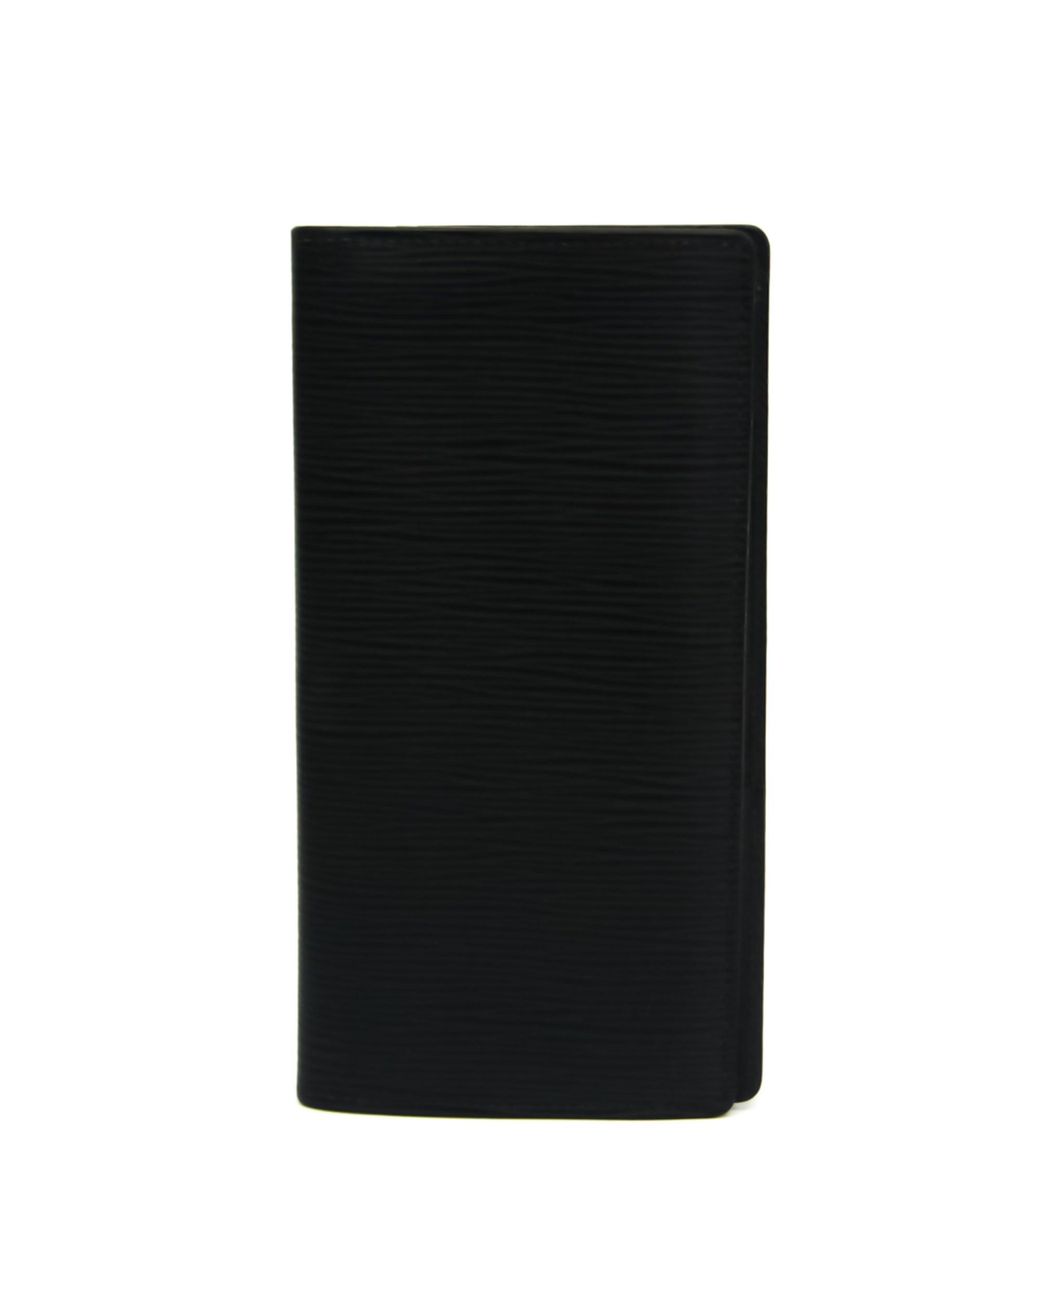 Authentic Louis Vuitton Black Epi Porte feiulle Brazza Long Wallet !!!